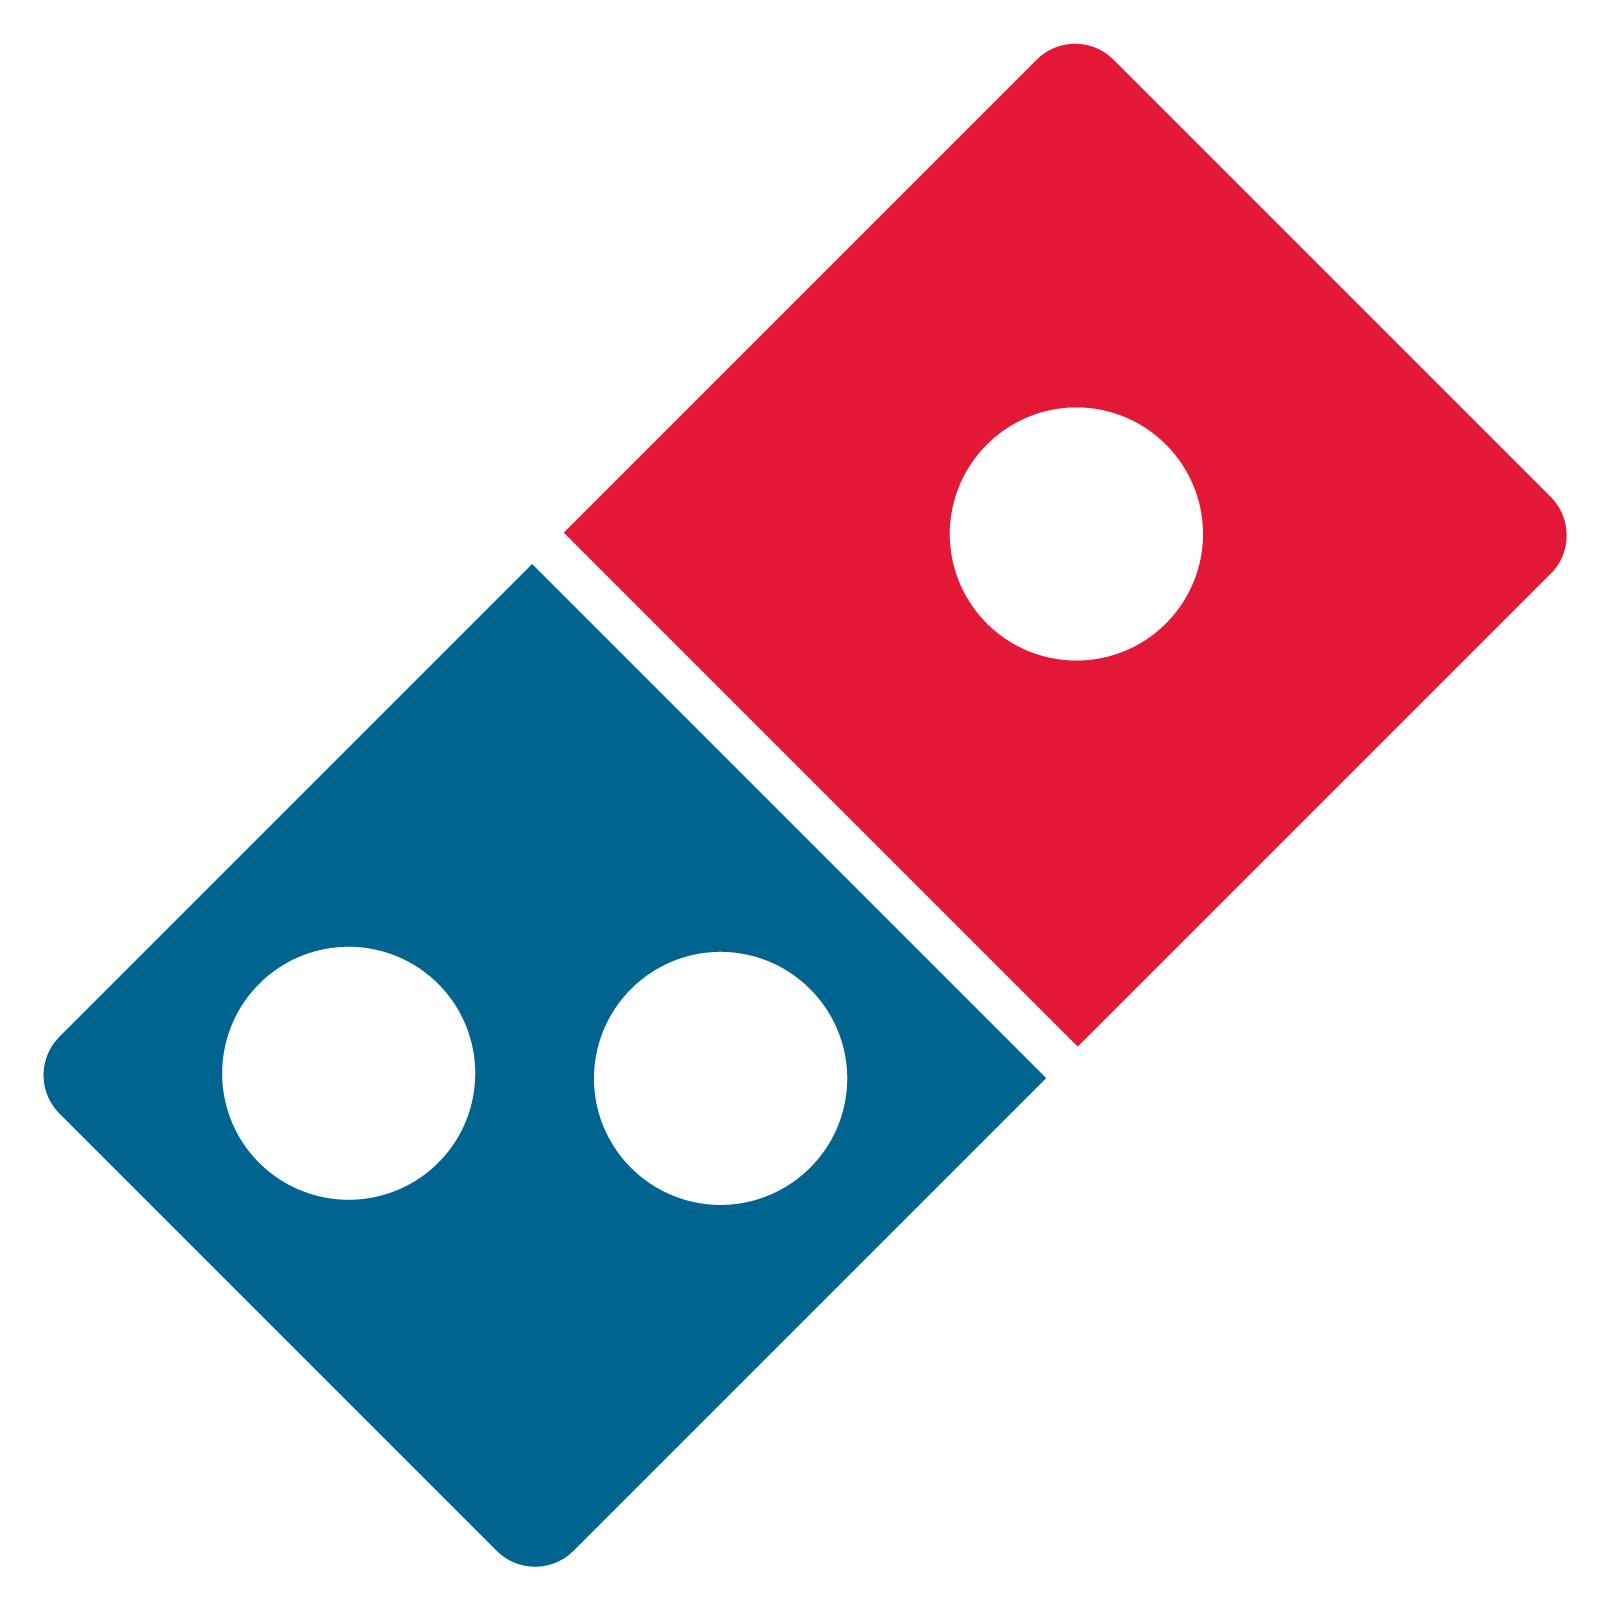 Domino's Pizza Logo - Domino's